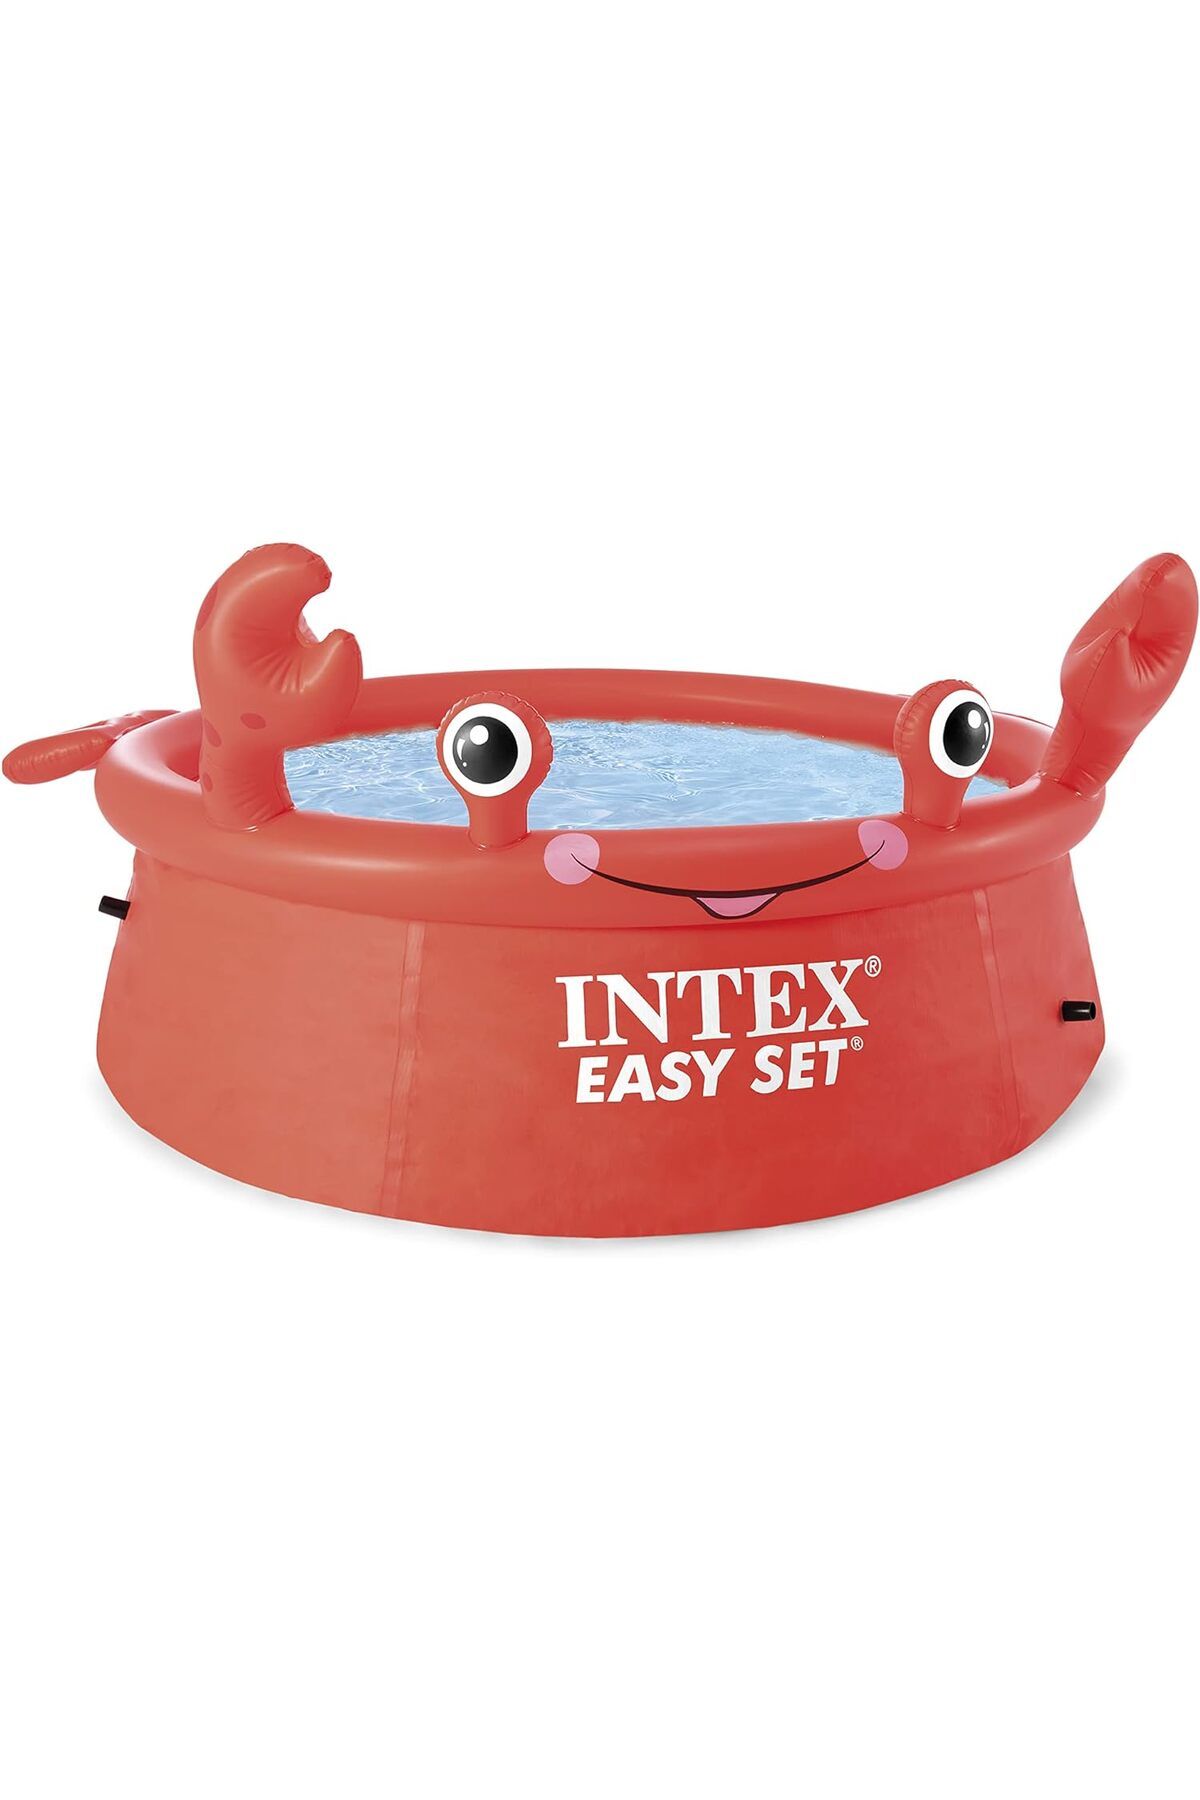 Intex Mutlu Yengeç Havuzu Yaz Eğlencesi için Basit Kurulum ve Eğlenceli Tasarım 880 L Kapasite